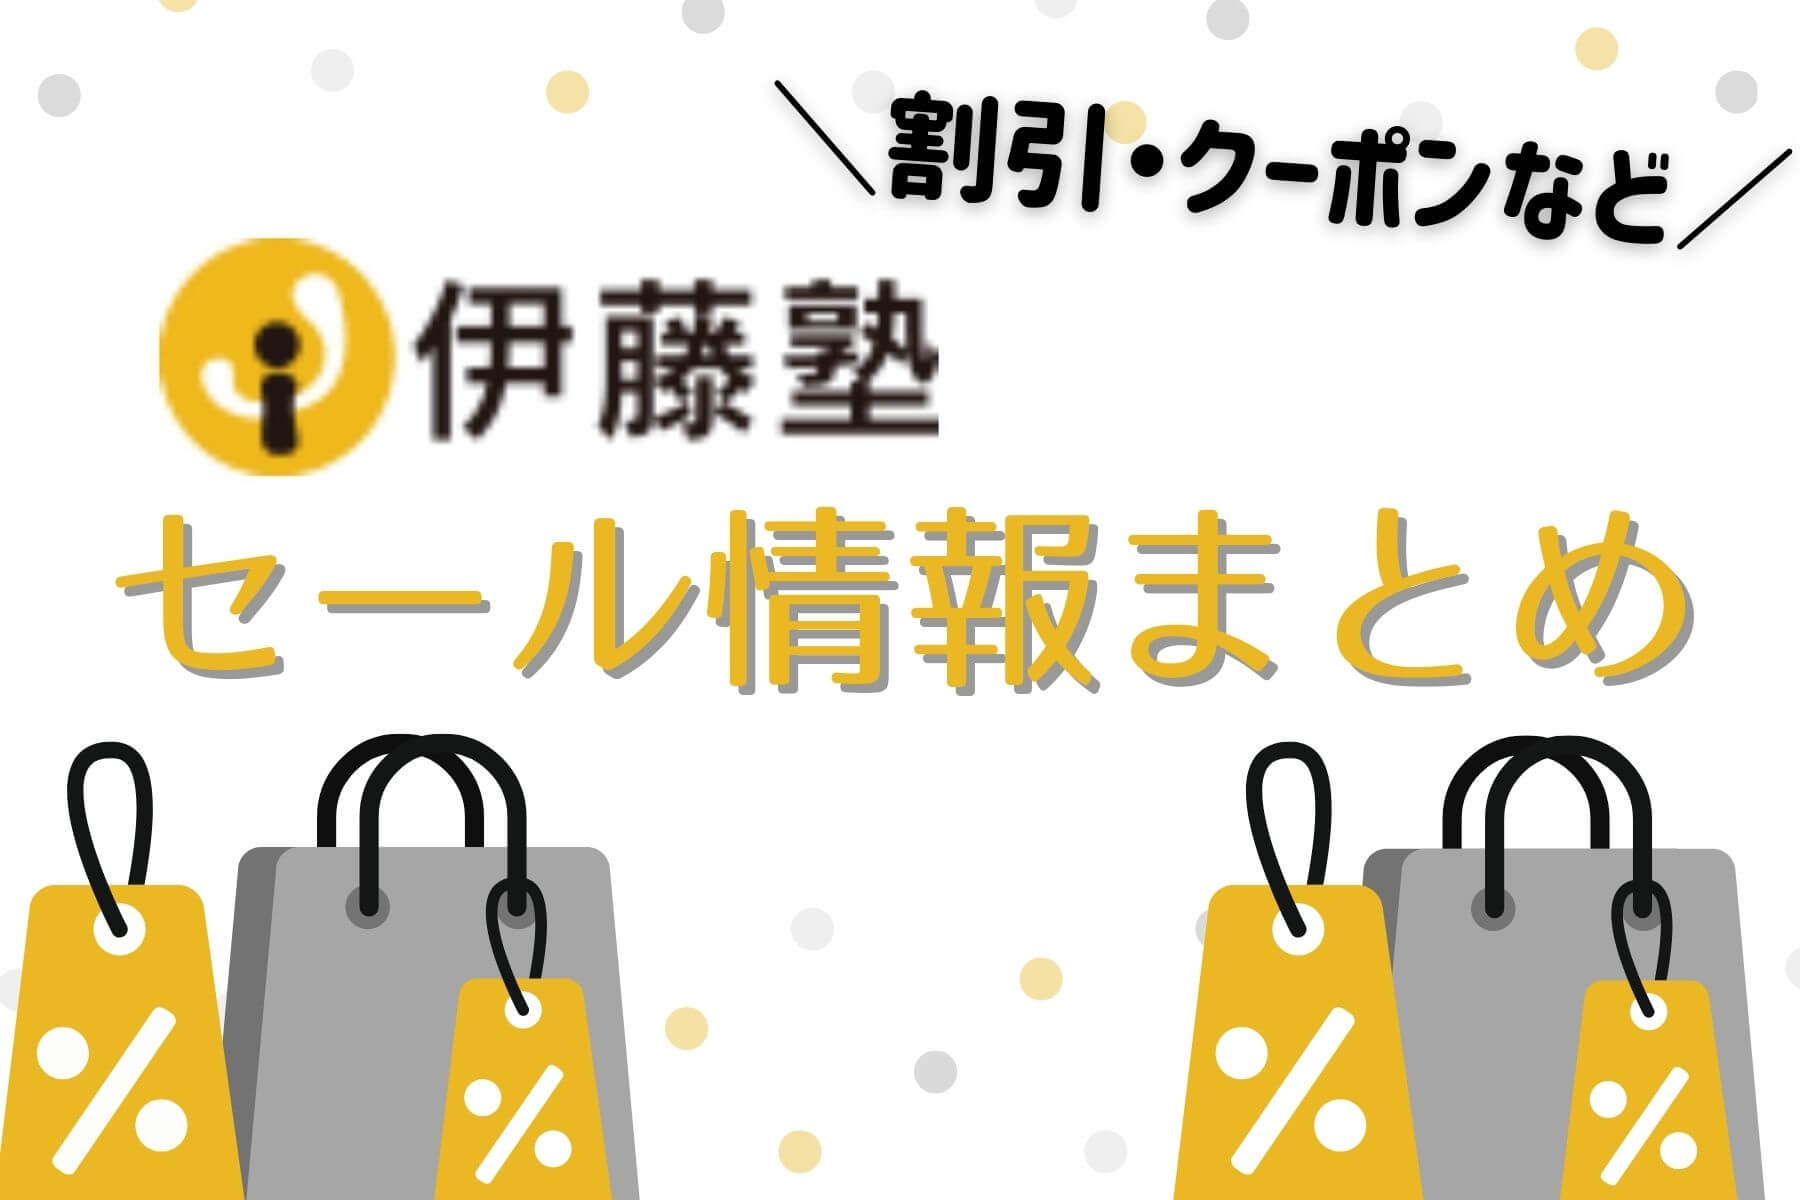 伊藤塾 割引クーポン・セール・受講料サポート制度情報まとめ【2022年 